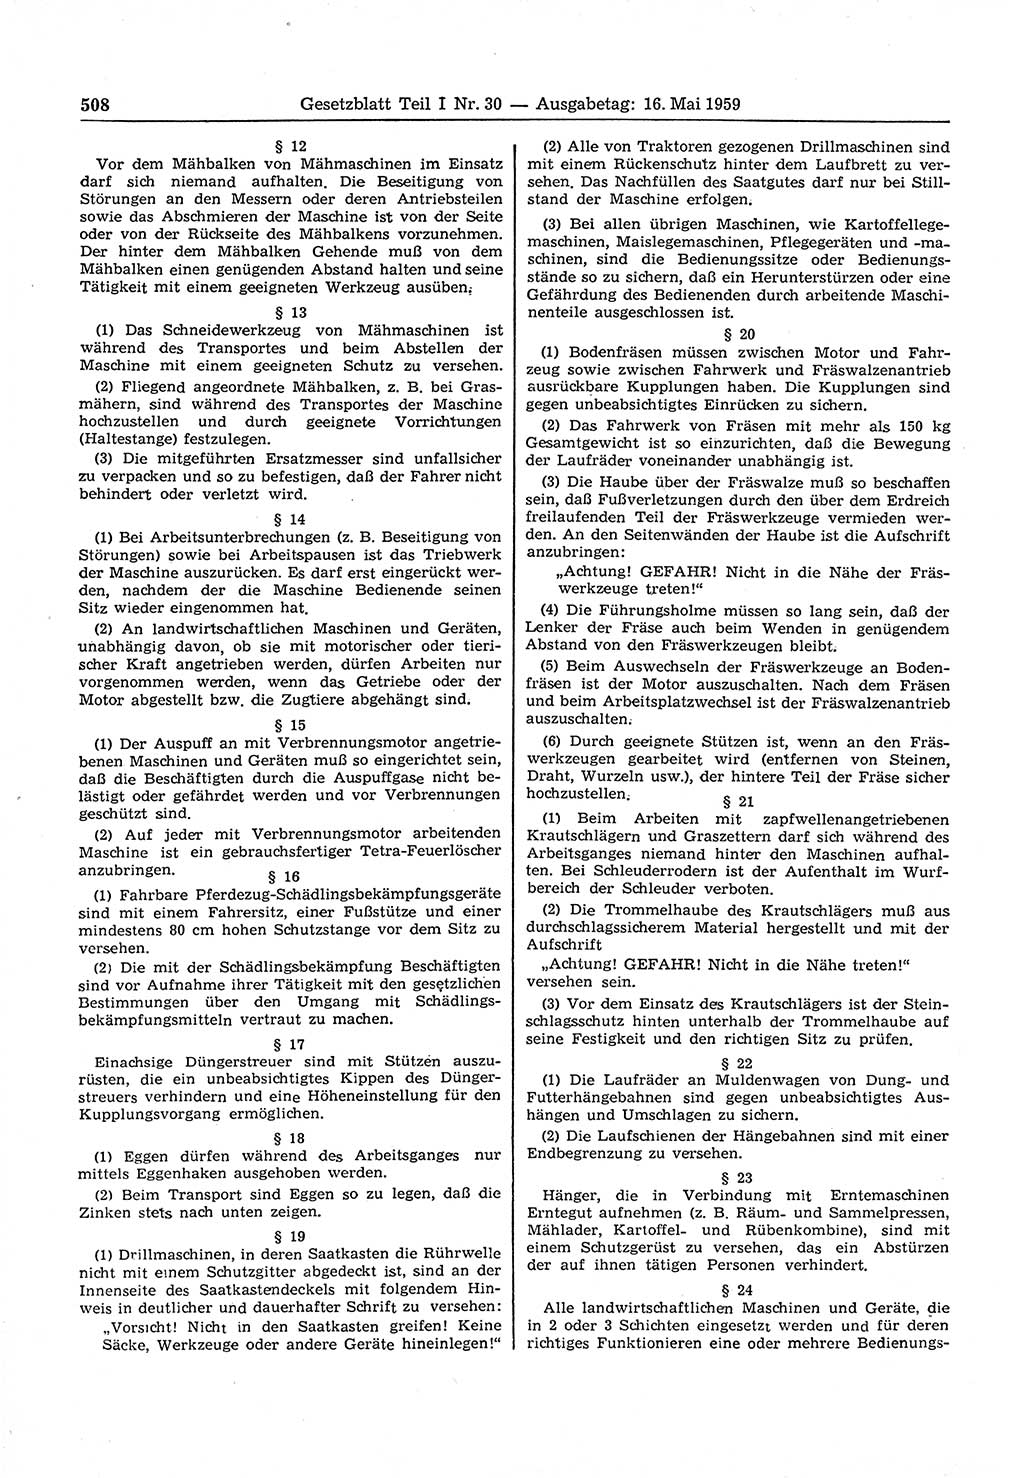 Gesetzblatt (GBl.) der Deutschen Demokratischen Republik (DDR) Teil Ⅰ 1959, Seite 508 (GBl. DDR Ⅰ 1959, S. 508)